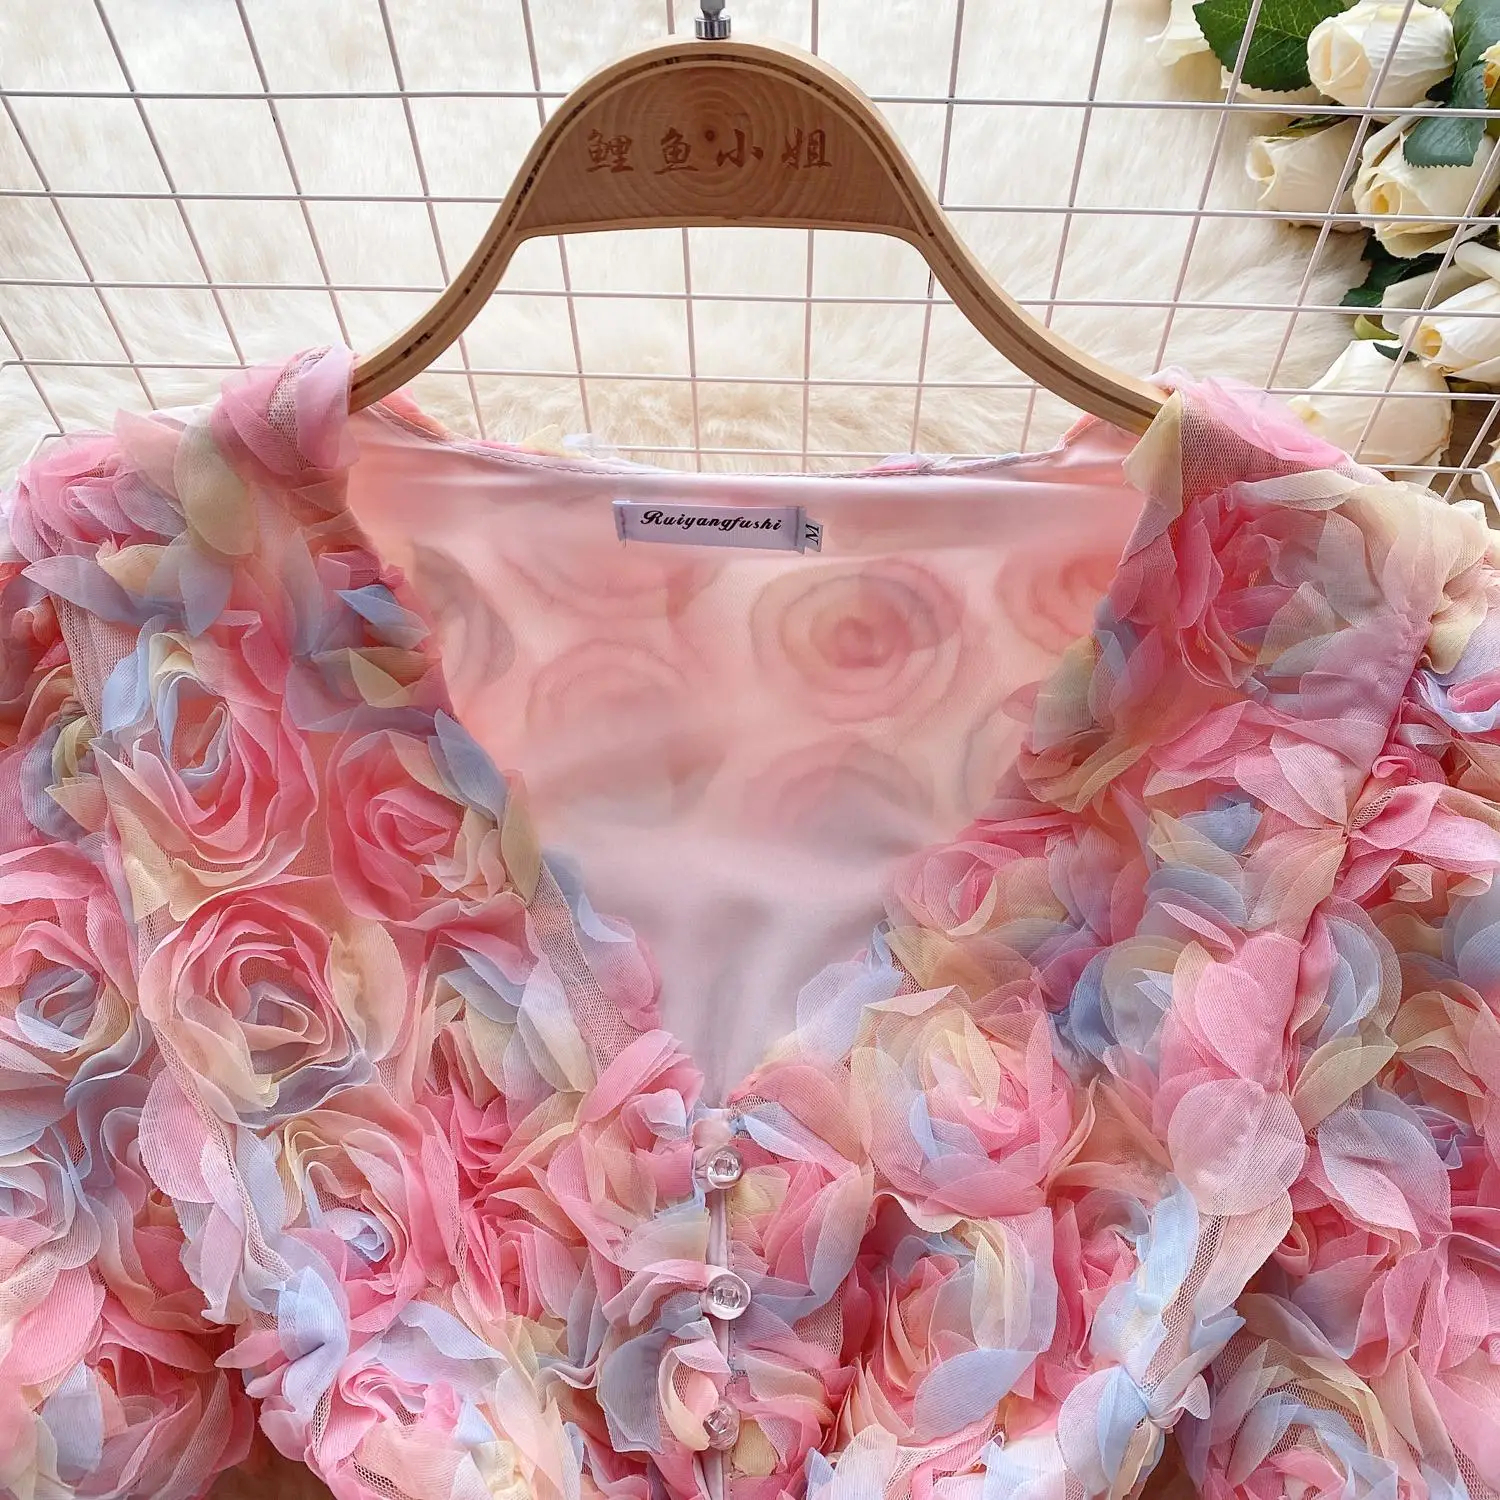 الفساتين الحضرية المثيرة الأزياء الزهور الملونة 3D شبكة صغيرة فستان نساء نفخة.